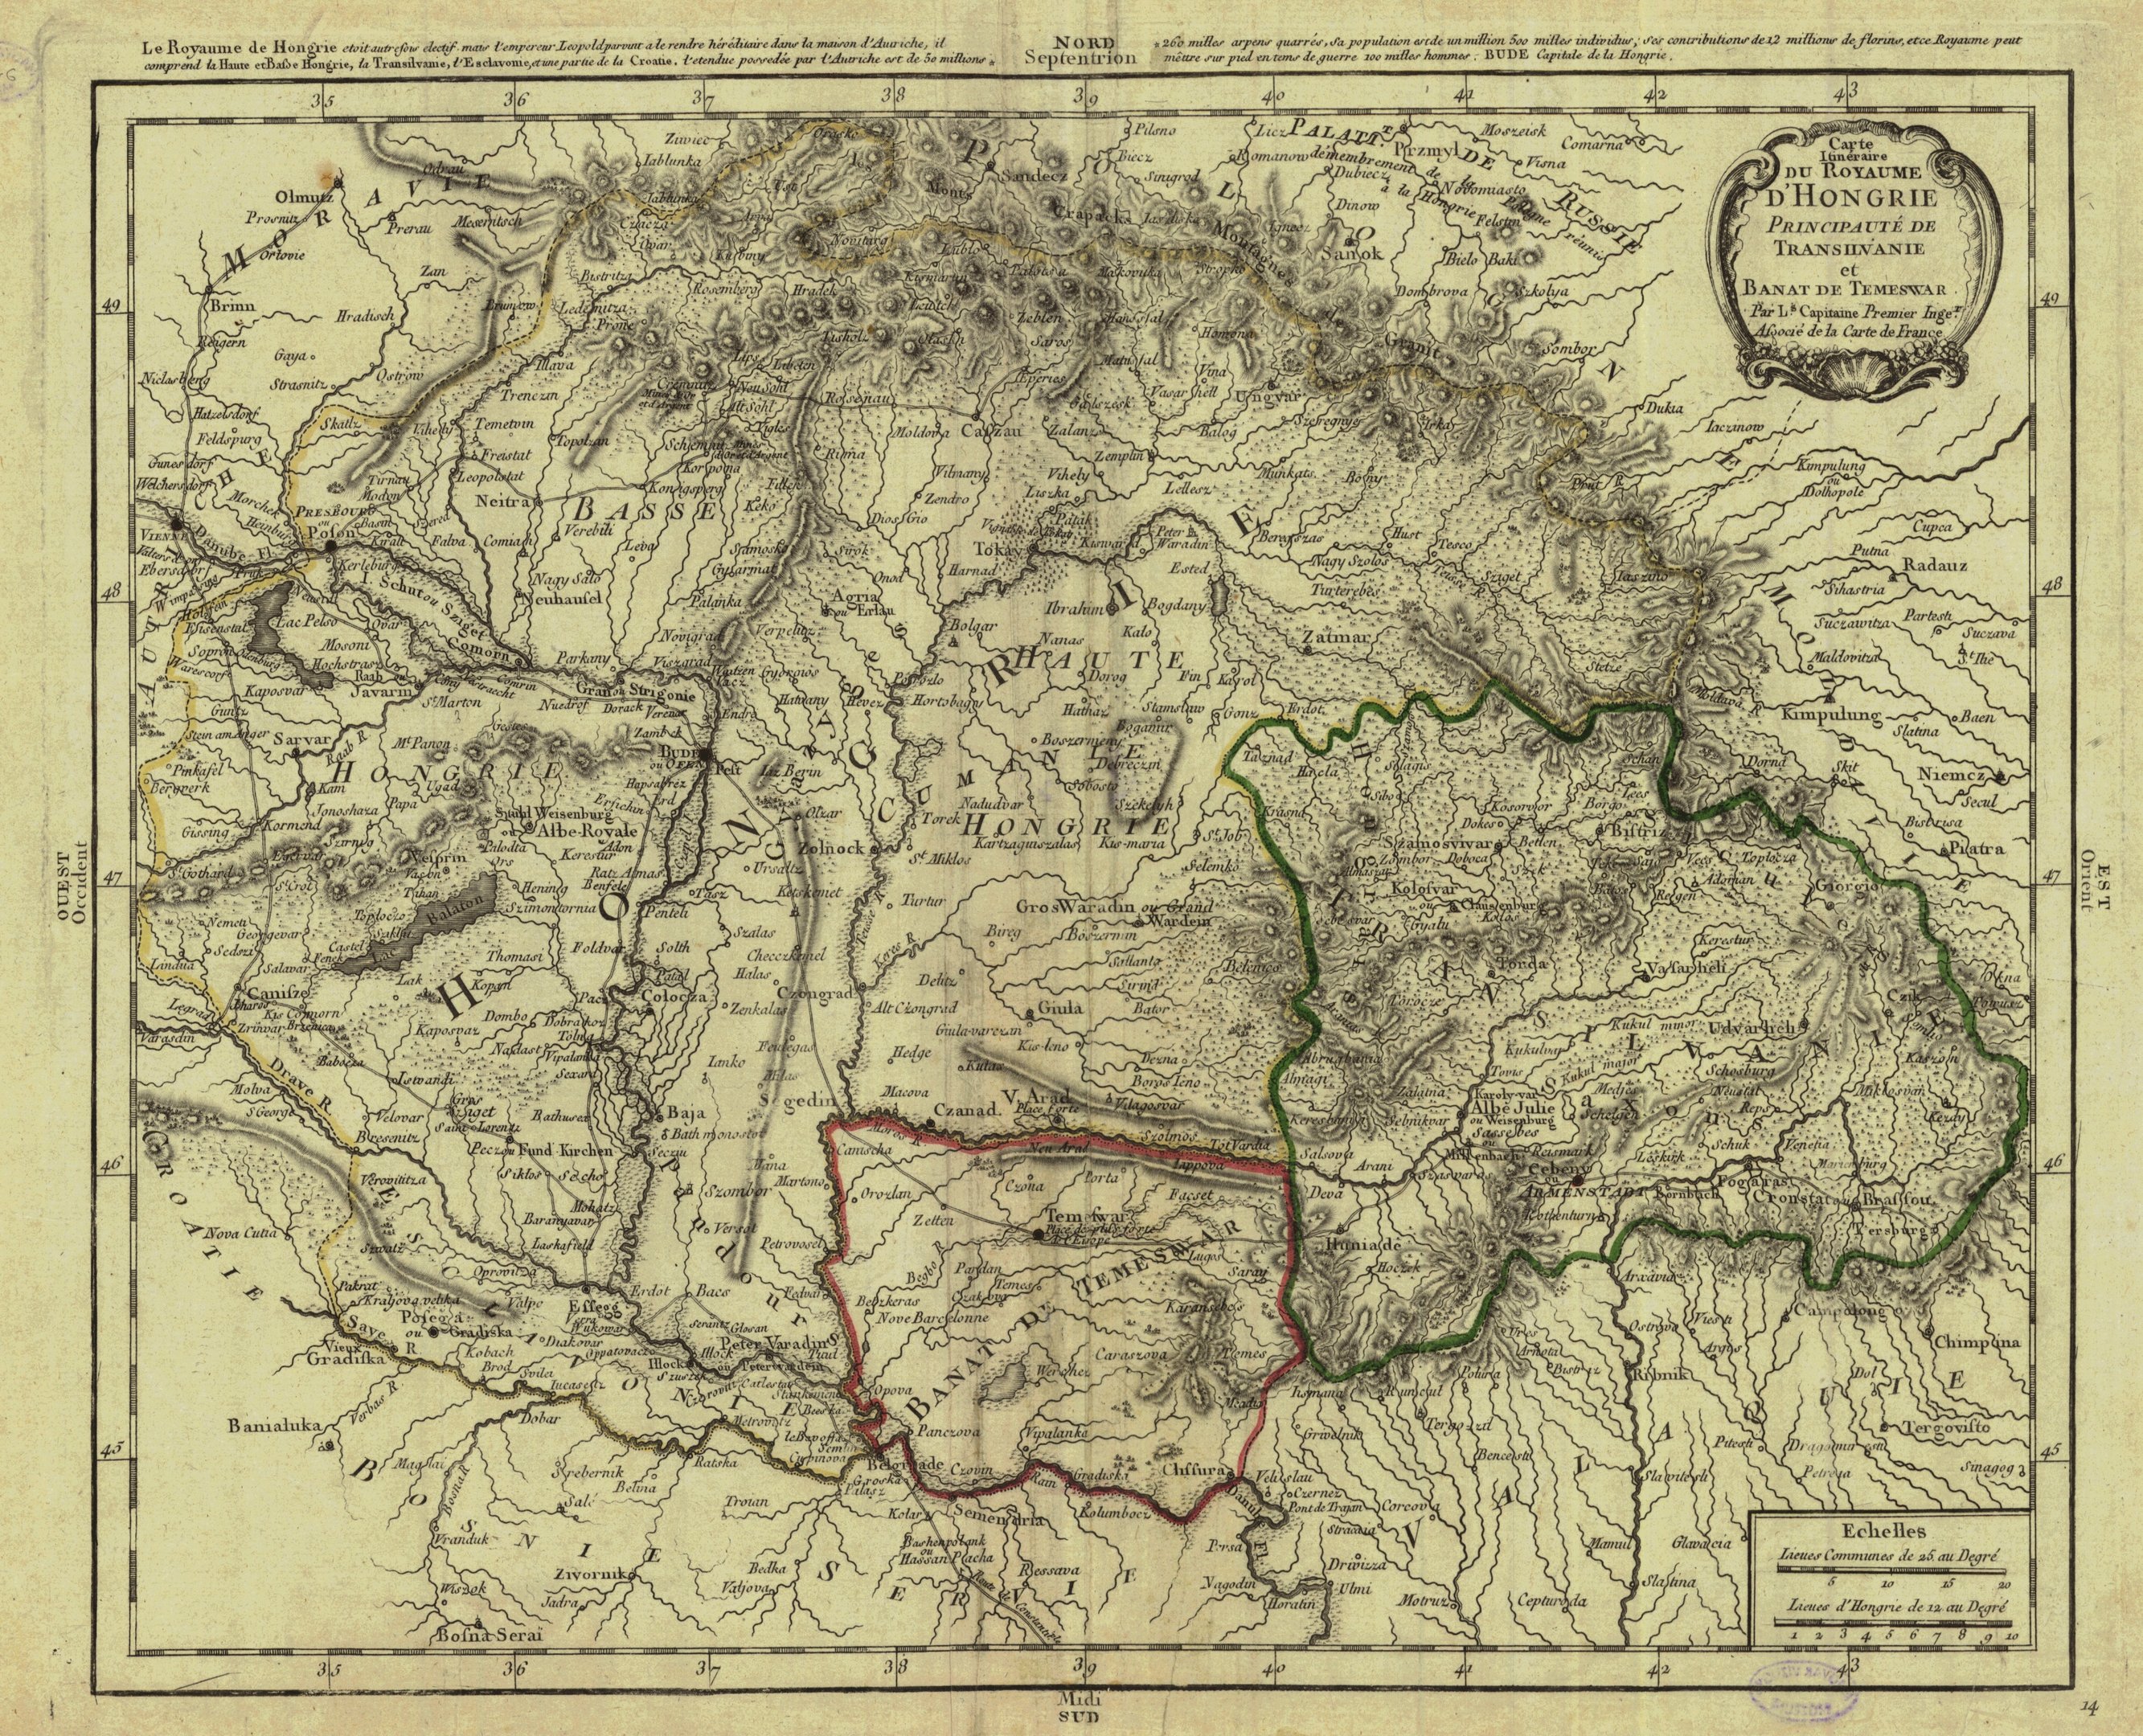 A Magyar Királyság úttérképe, 1790 (Magyar Környezetvédelmi és Vízügyi Múzeum - Duna Múzeum CC BY-NC-SA)